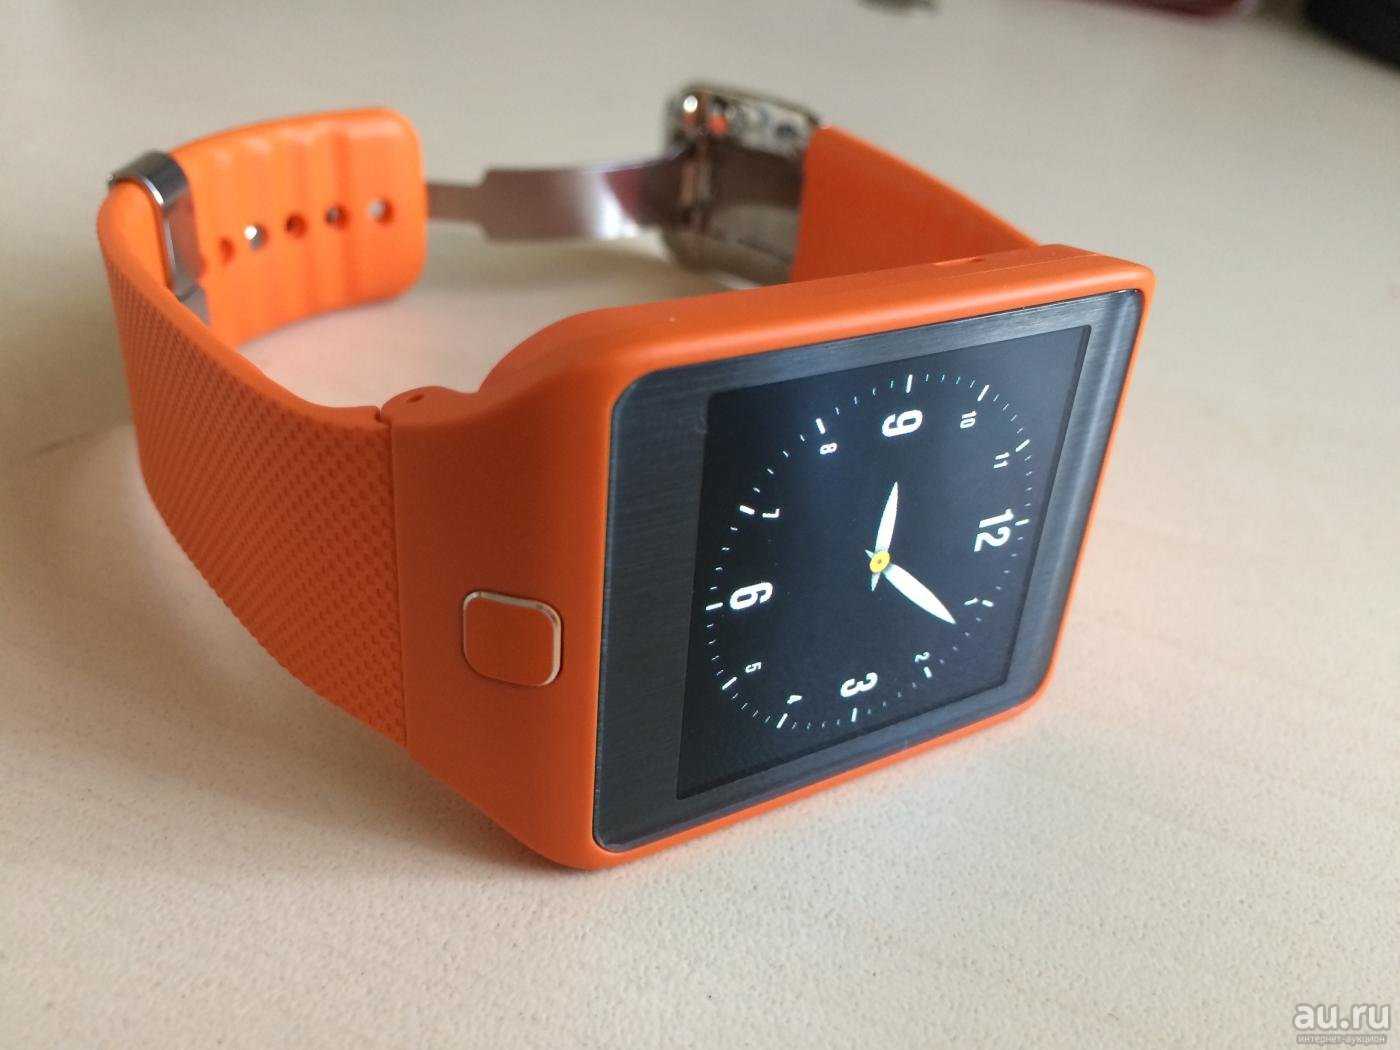 Умные часы samsung gear 2 neo sm-r381 оранжевый — купить, цена и характеристики, отзывы